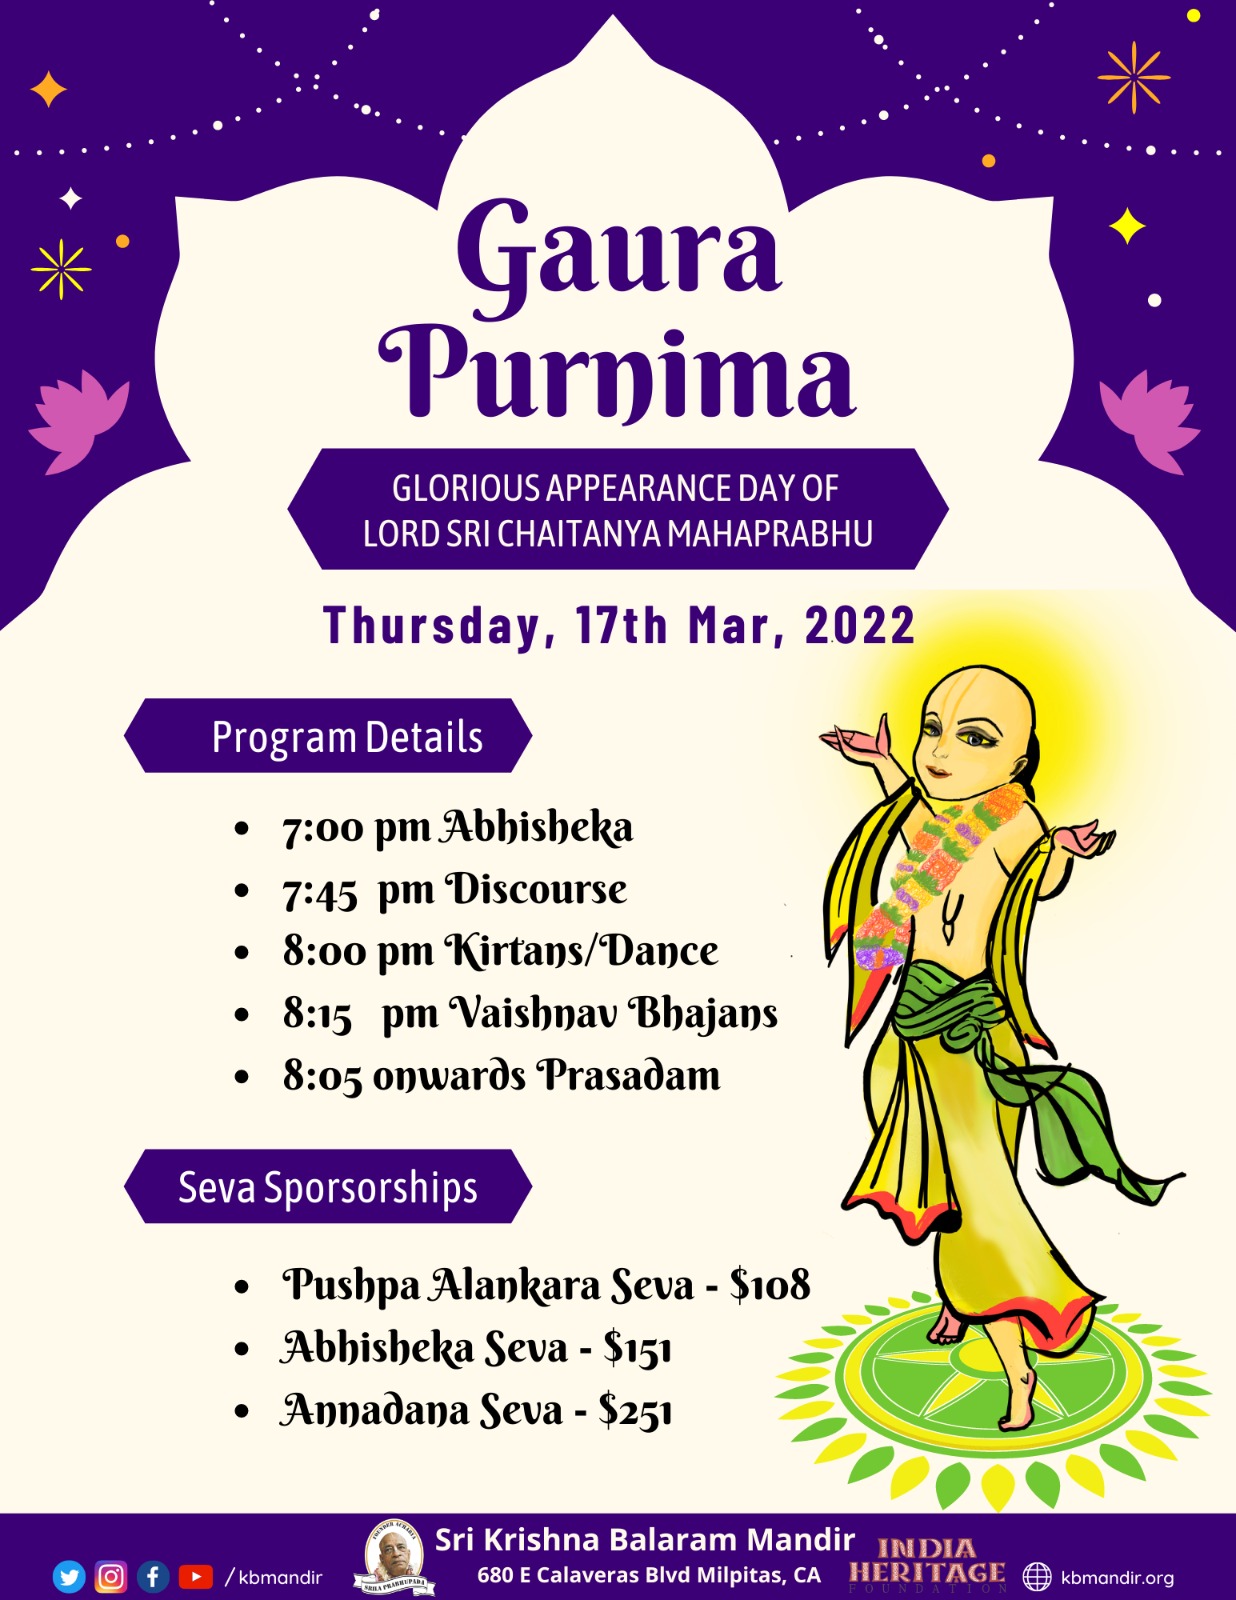 Gaura Purnima on March 17th – Sri Krishna Balaram Mandir